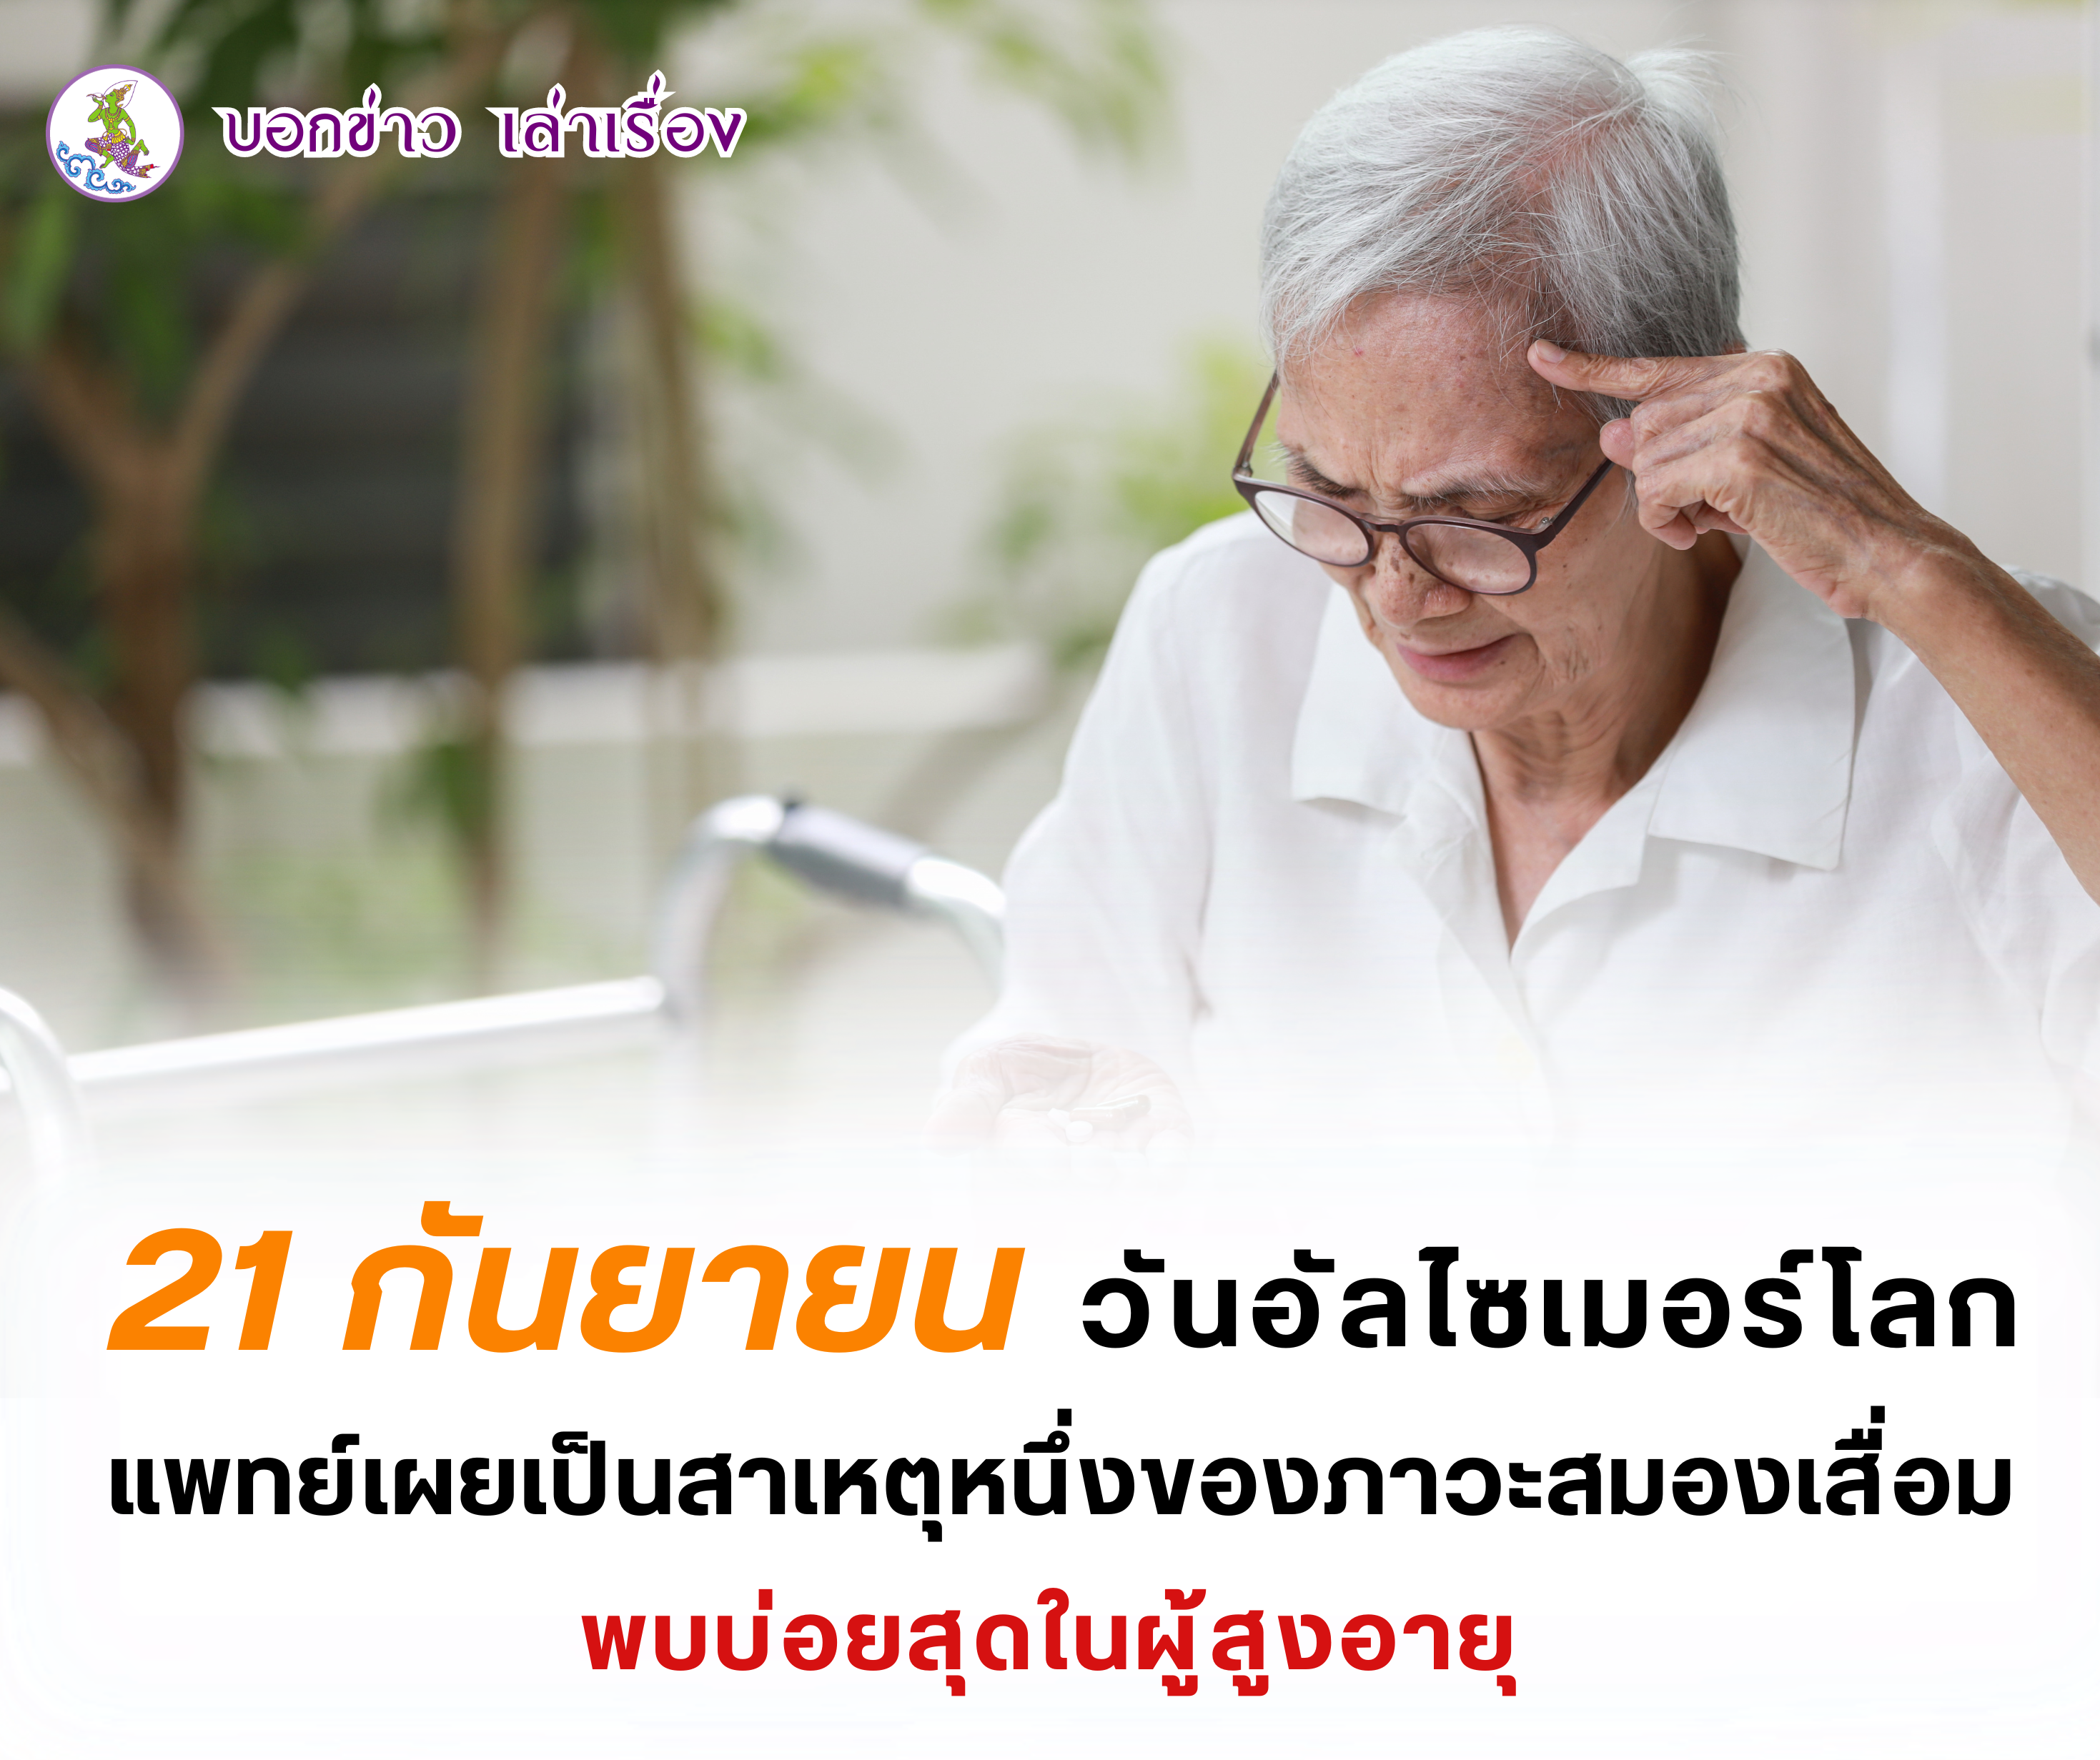 21 กันยายน วันอัลไซเมอร์โลก แพทย์เผยเป็นโรคสาเหตุหนึ่งของภาวะสมองเสื่อม พบบ่อยสุดในผู้สูงอายุ